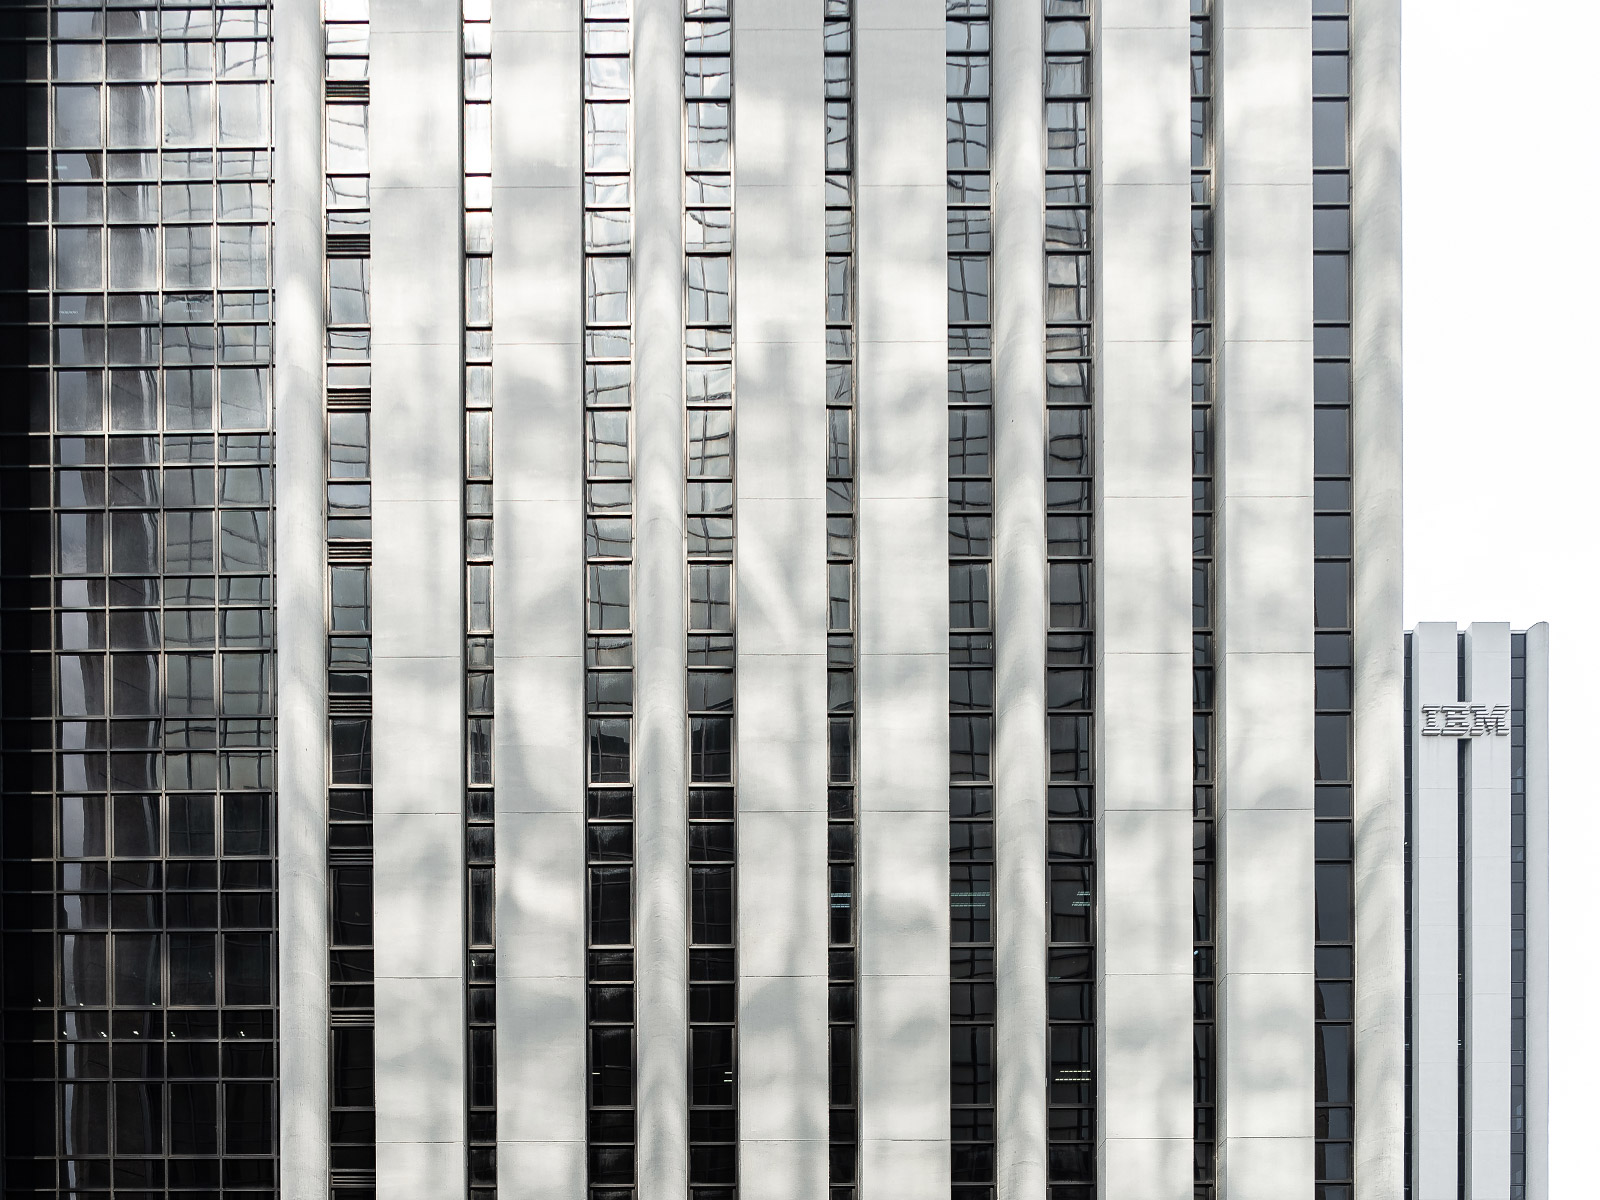 อาคารเอสพี-ตึกไอบีเอ็ม (S.P. Building - IBM Building) วัสดุ: คอนกรีตและแก้ว (Concrete & Glass)